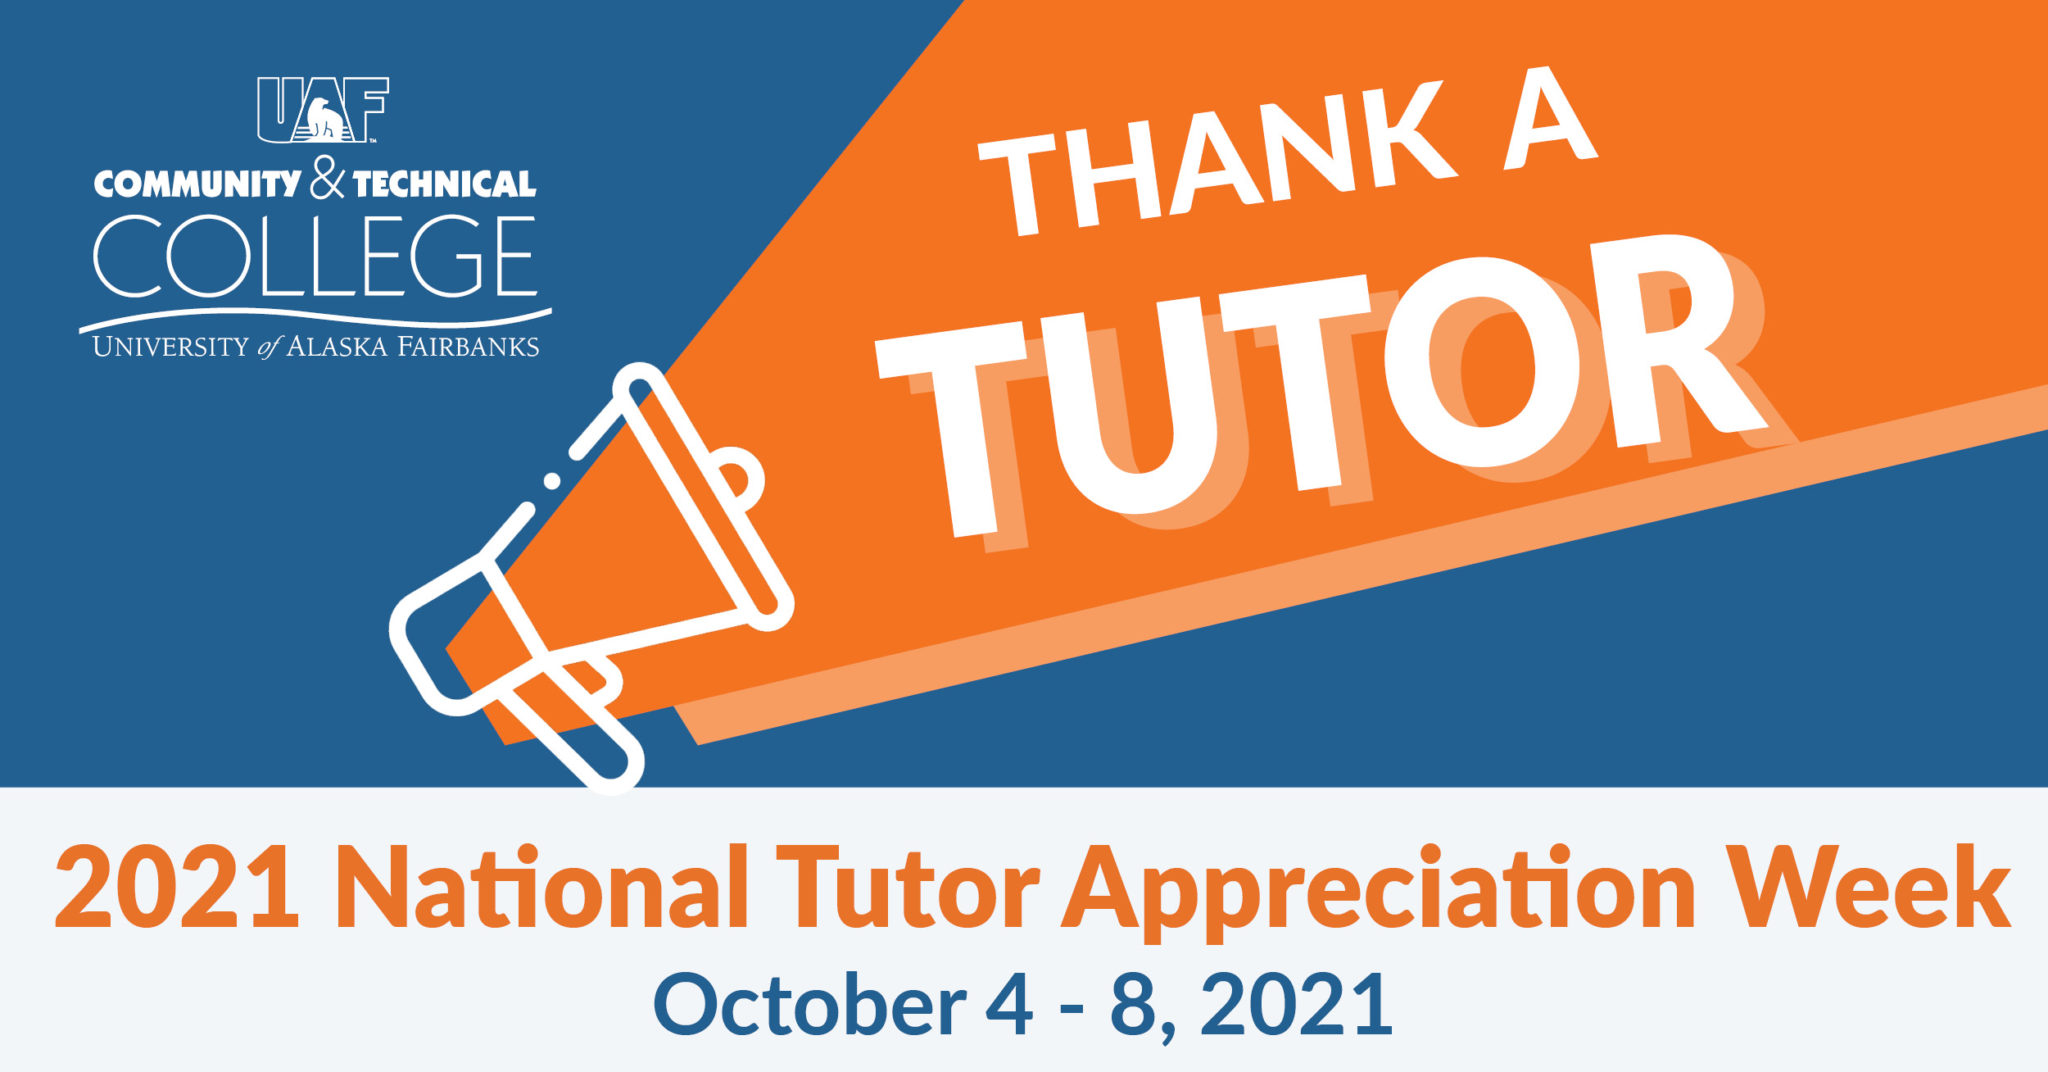 Thank a Tutor, National Tutor Appreciation Week, October 4-8, 2021